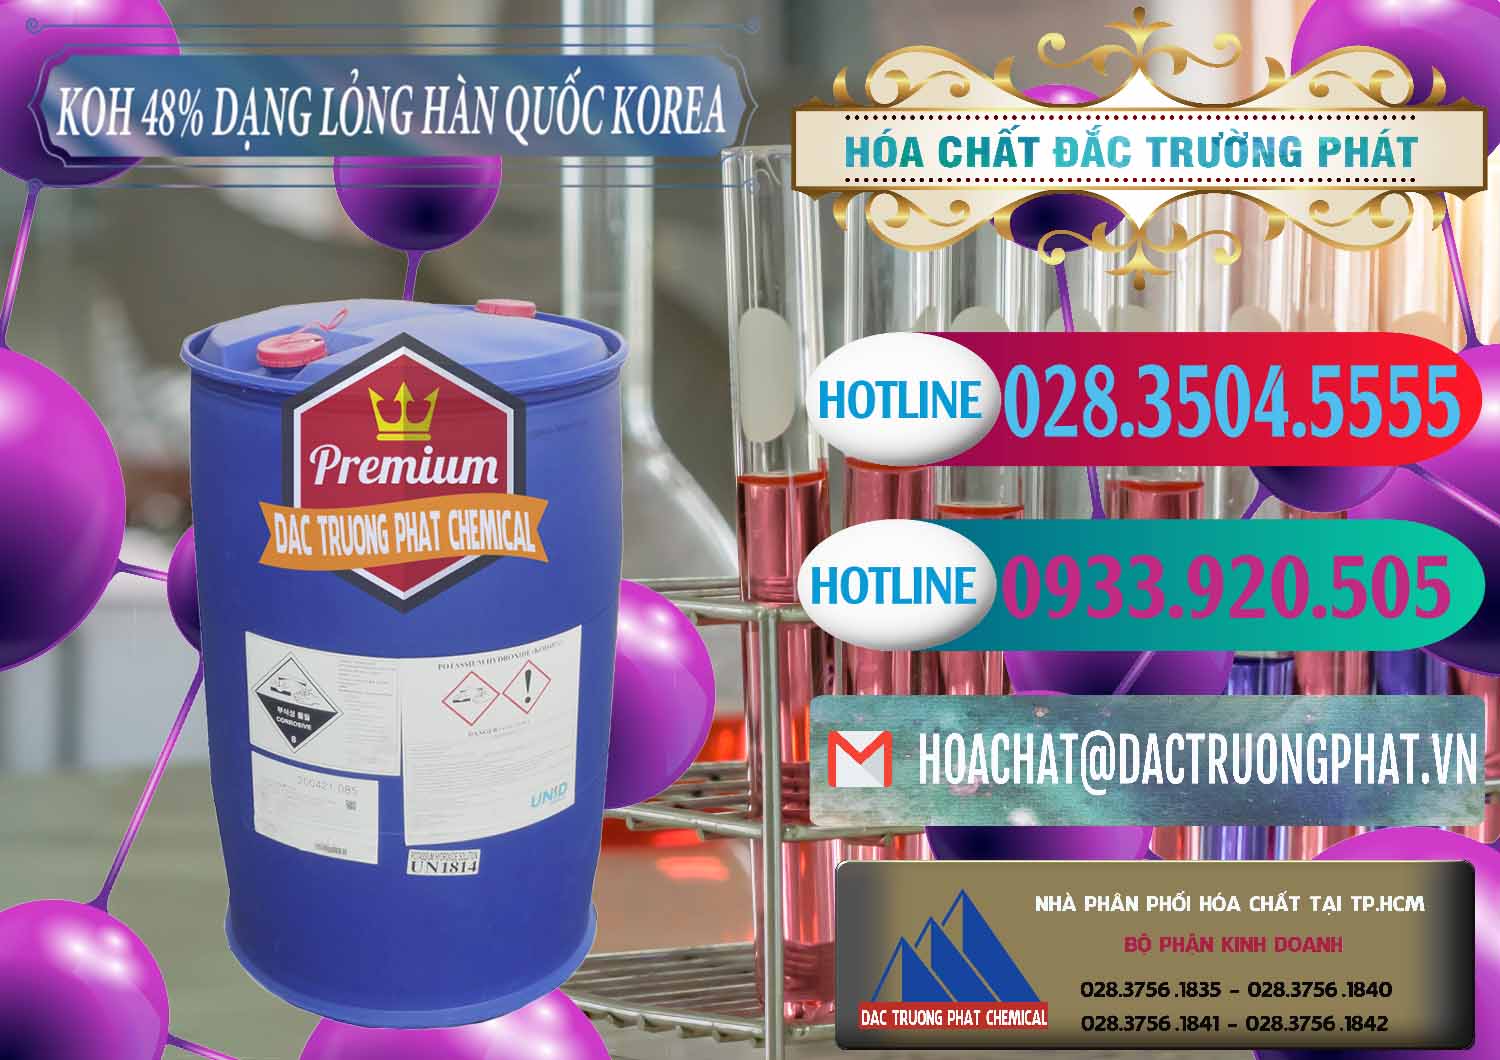 Công ty bán và cung ứng KOH Dạng Nước – Potassium Hydroxide Lỏng 48% Hàn Quốc Korea - 0293 - Nhà phân phối và kinh doanh hóa chất tại TP.HCM - truongphat.vn